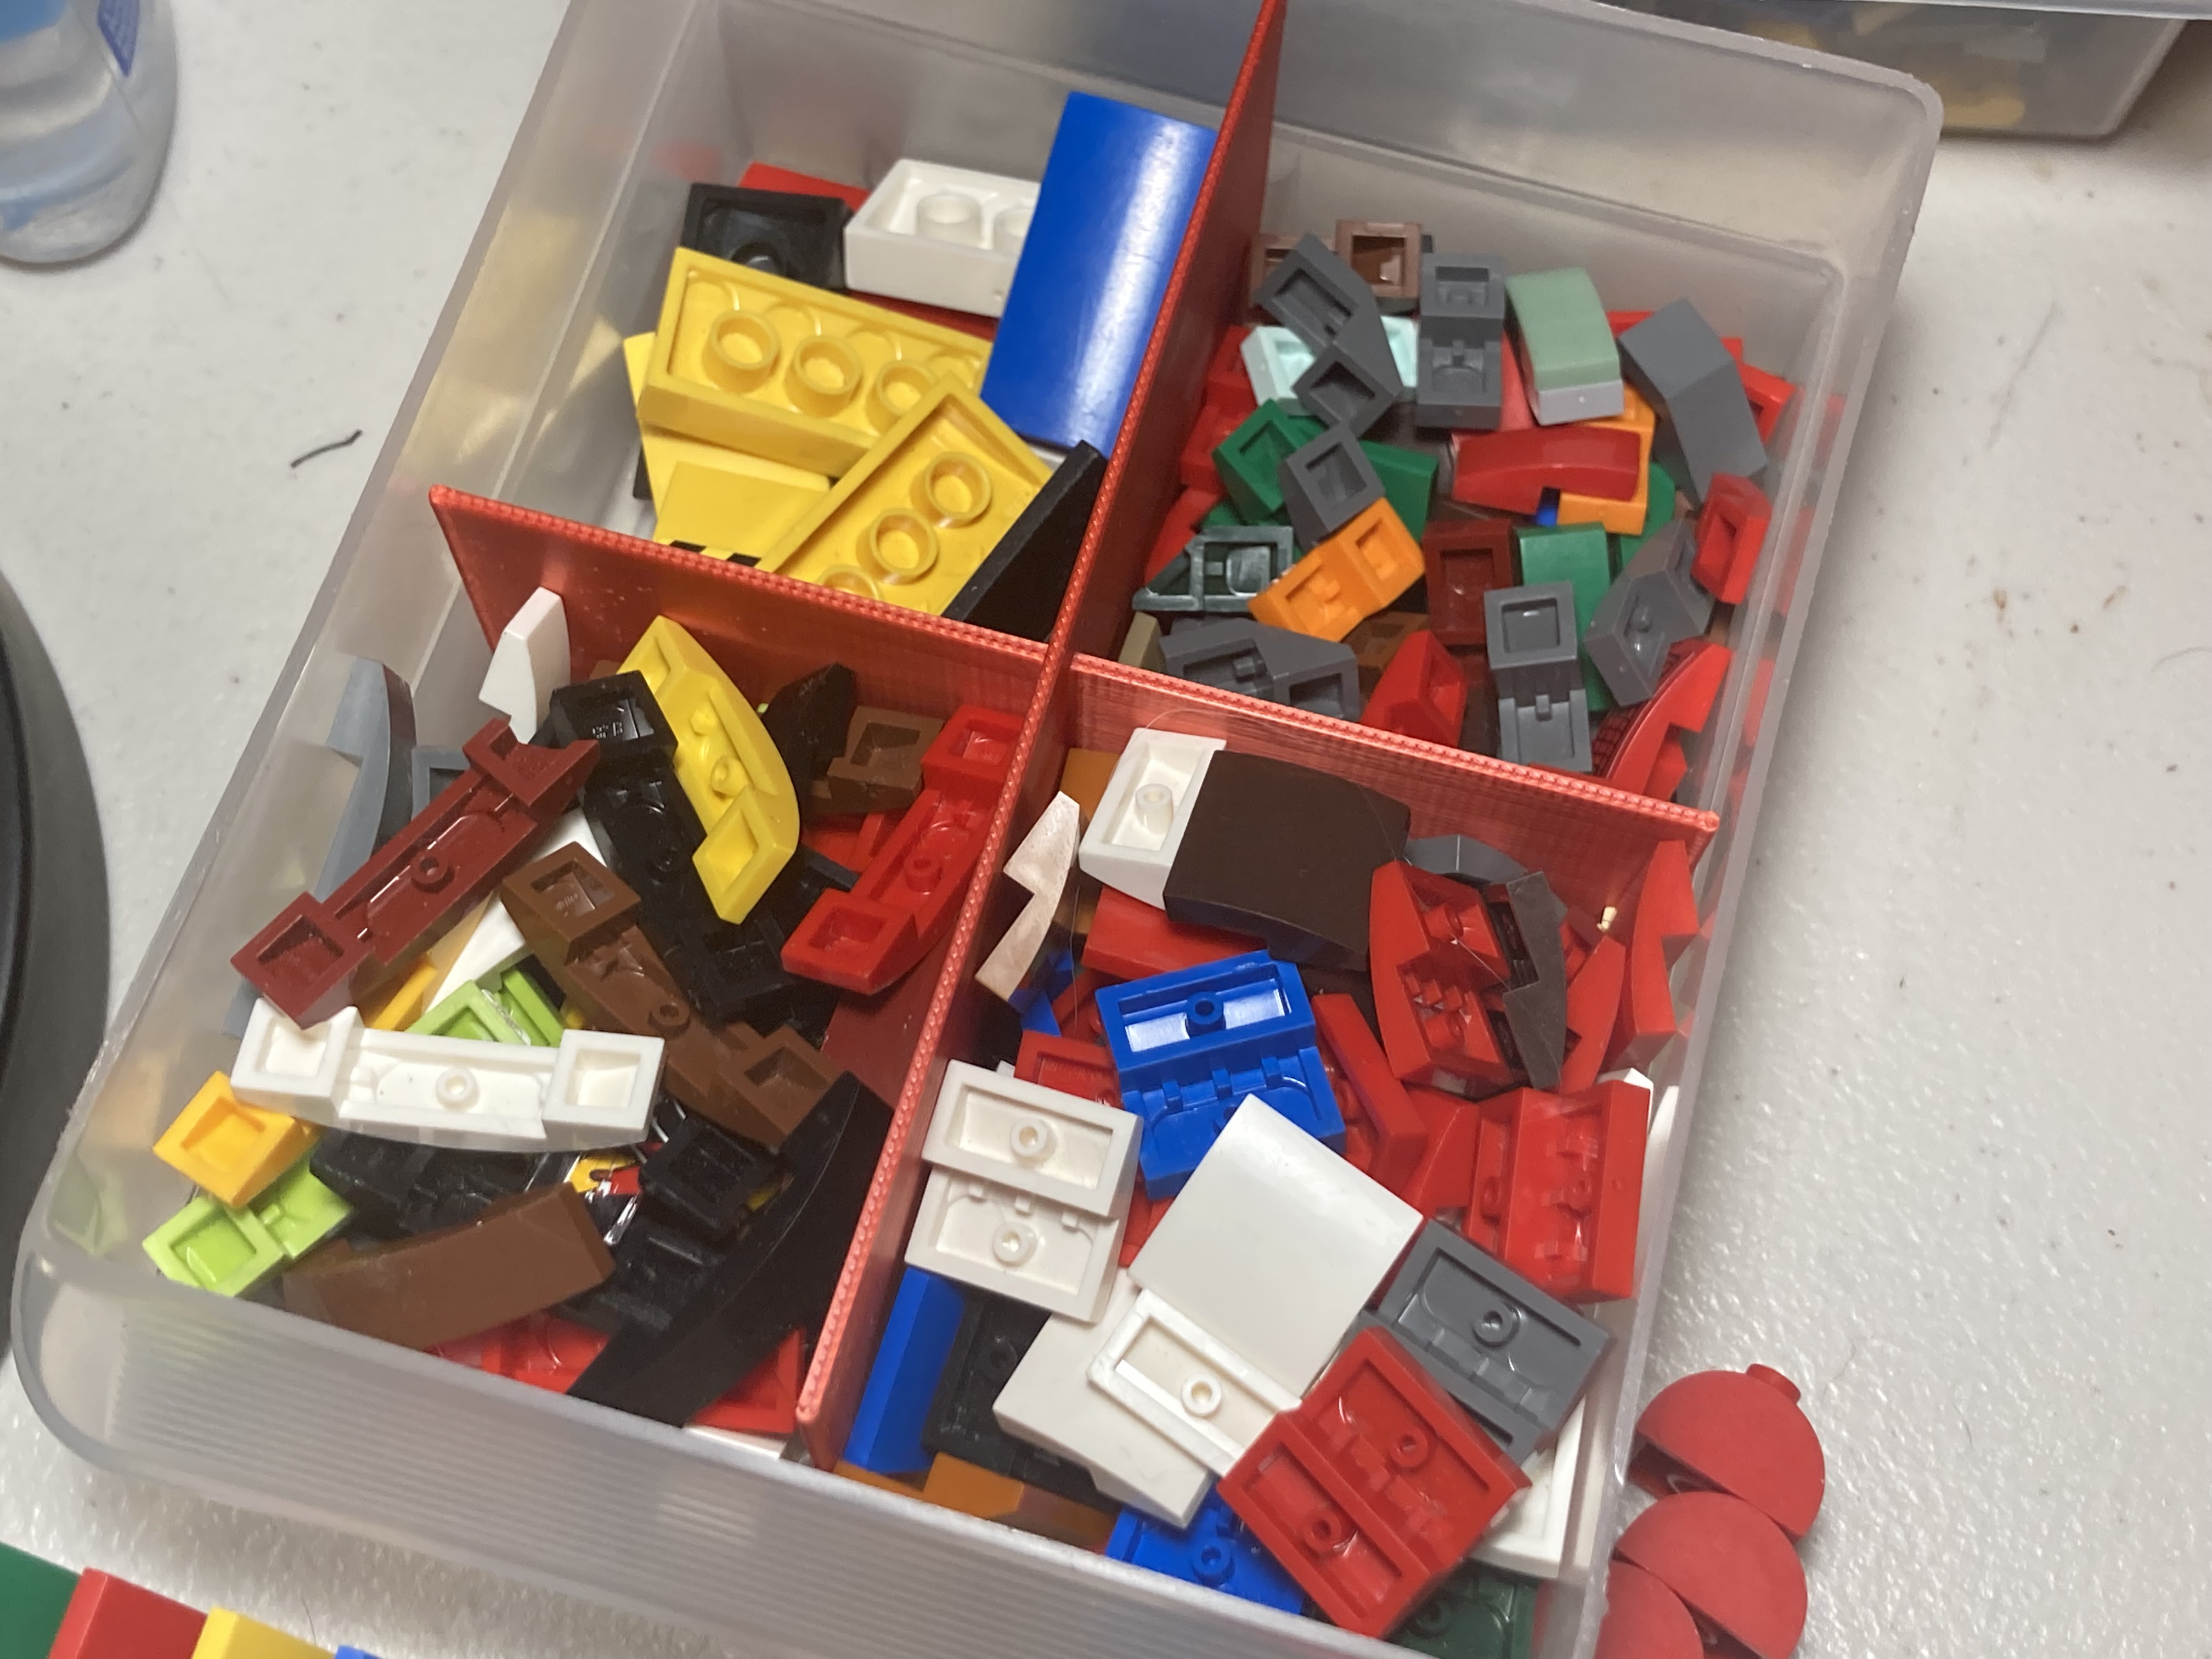 Storage drawer divider